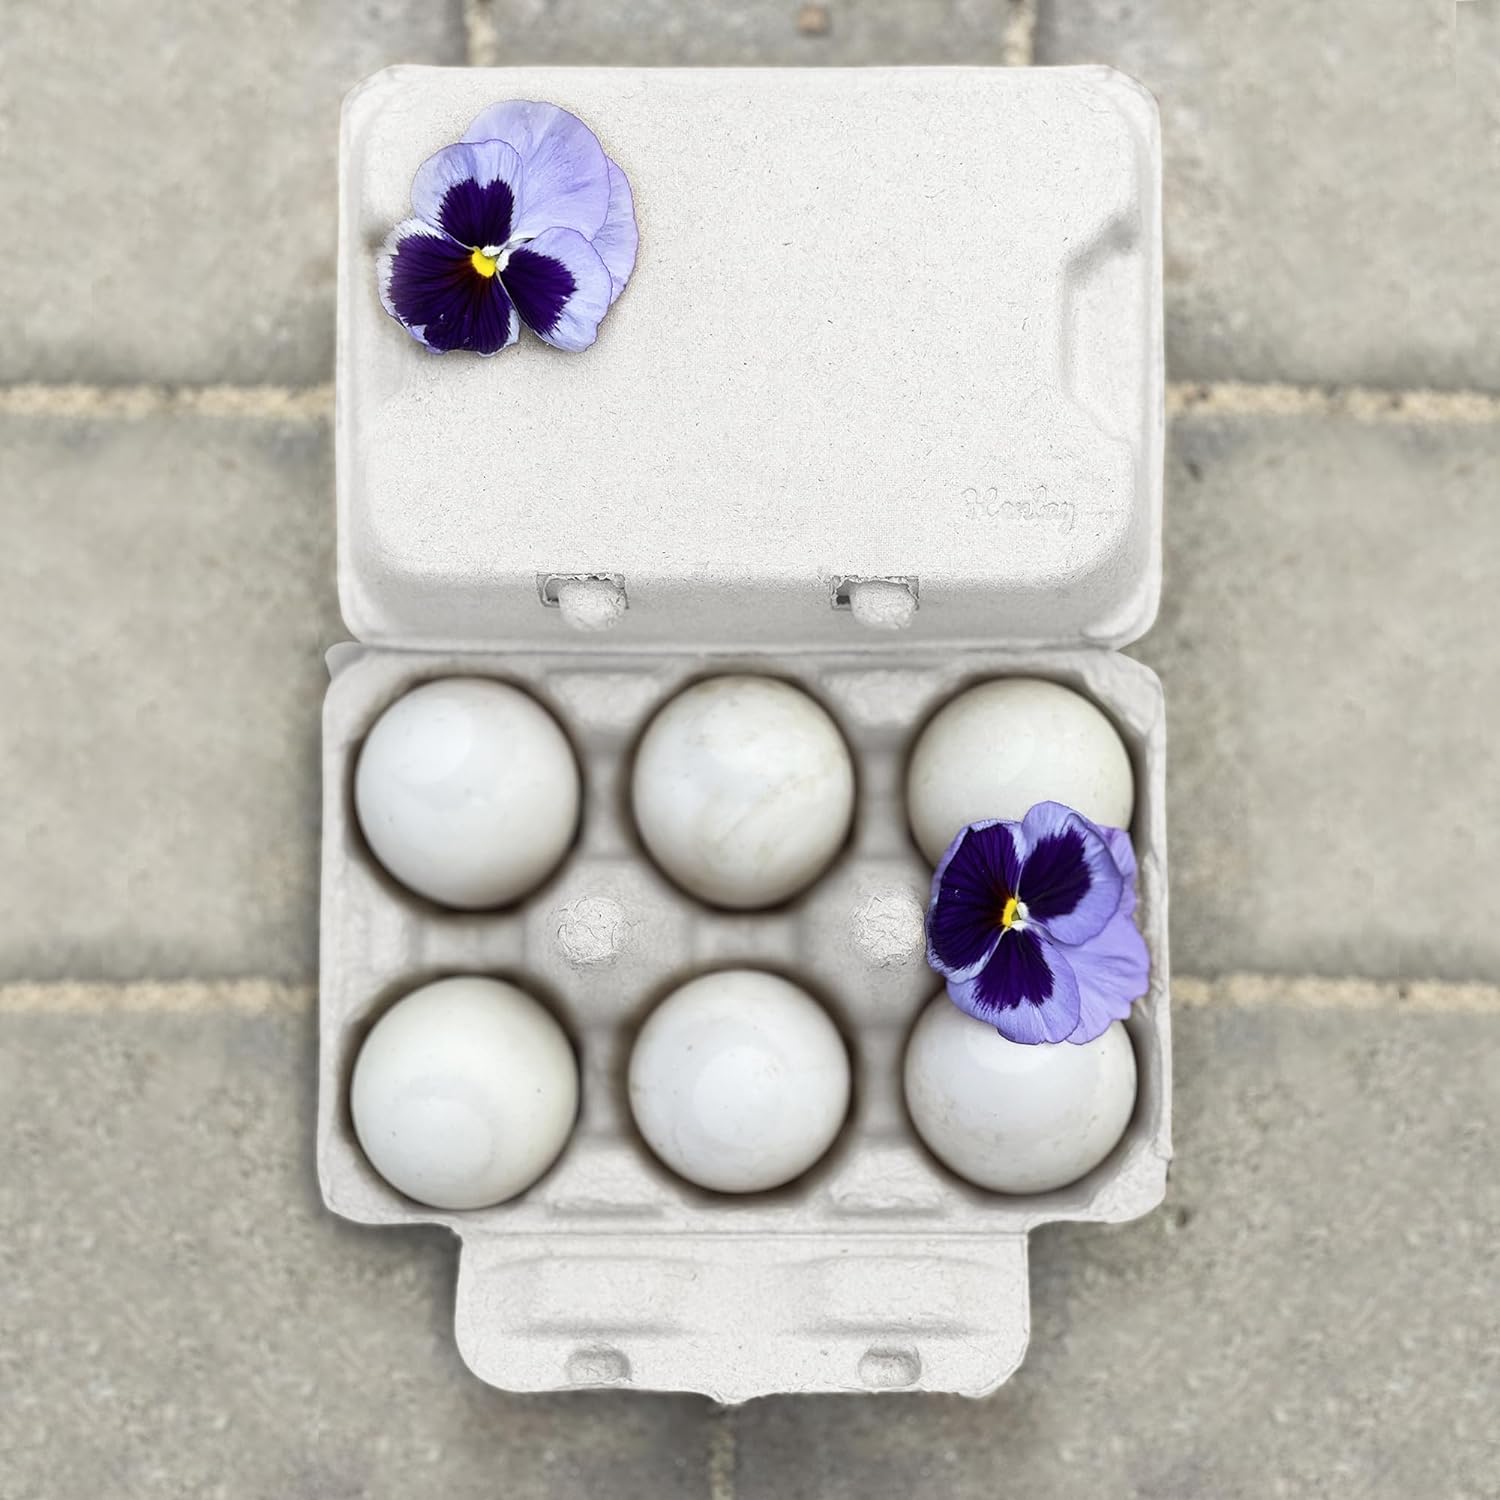 Duck Egg Cartons- Holds Half Dozen Jumbo Eggs- Blank Top- 100/Pack